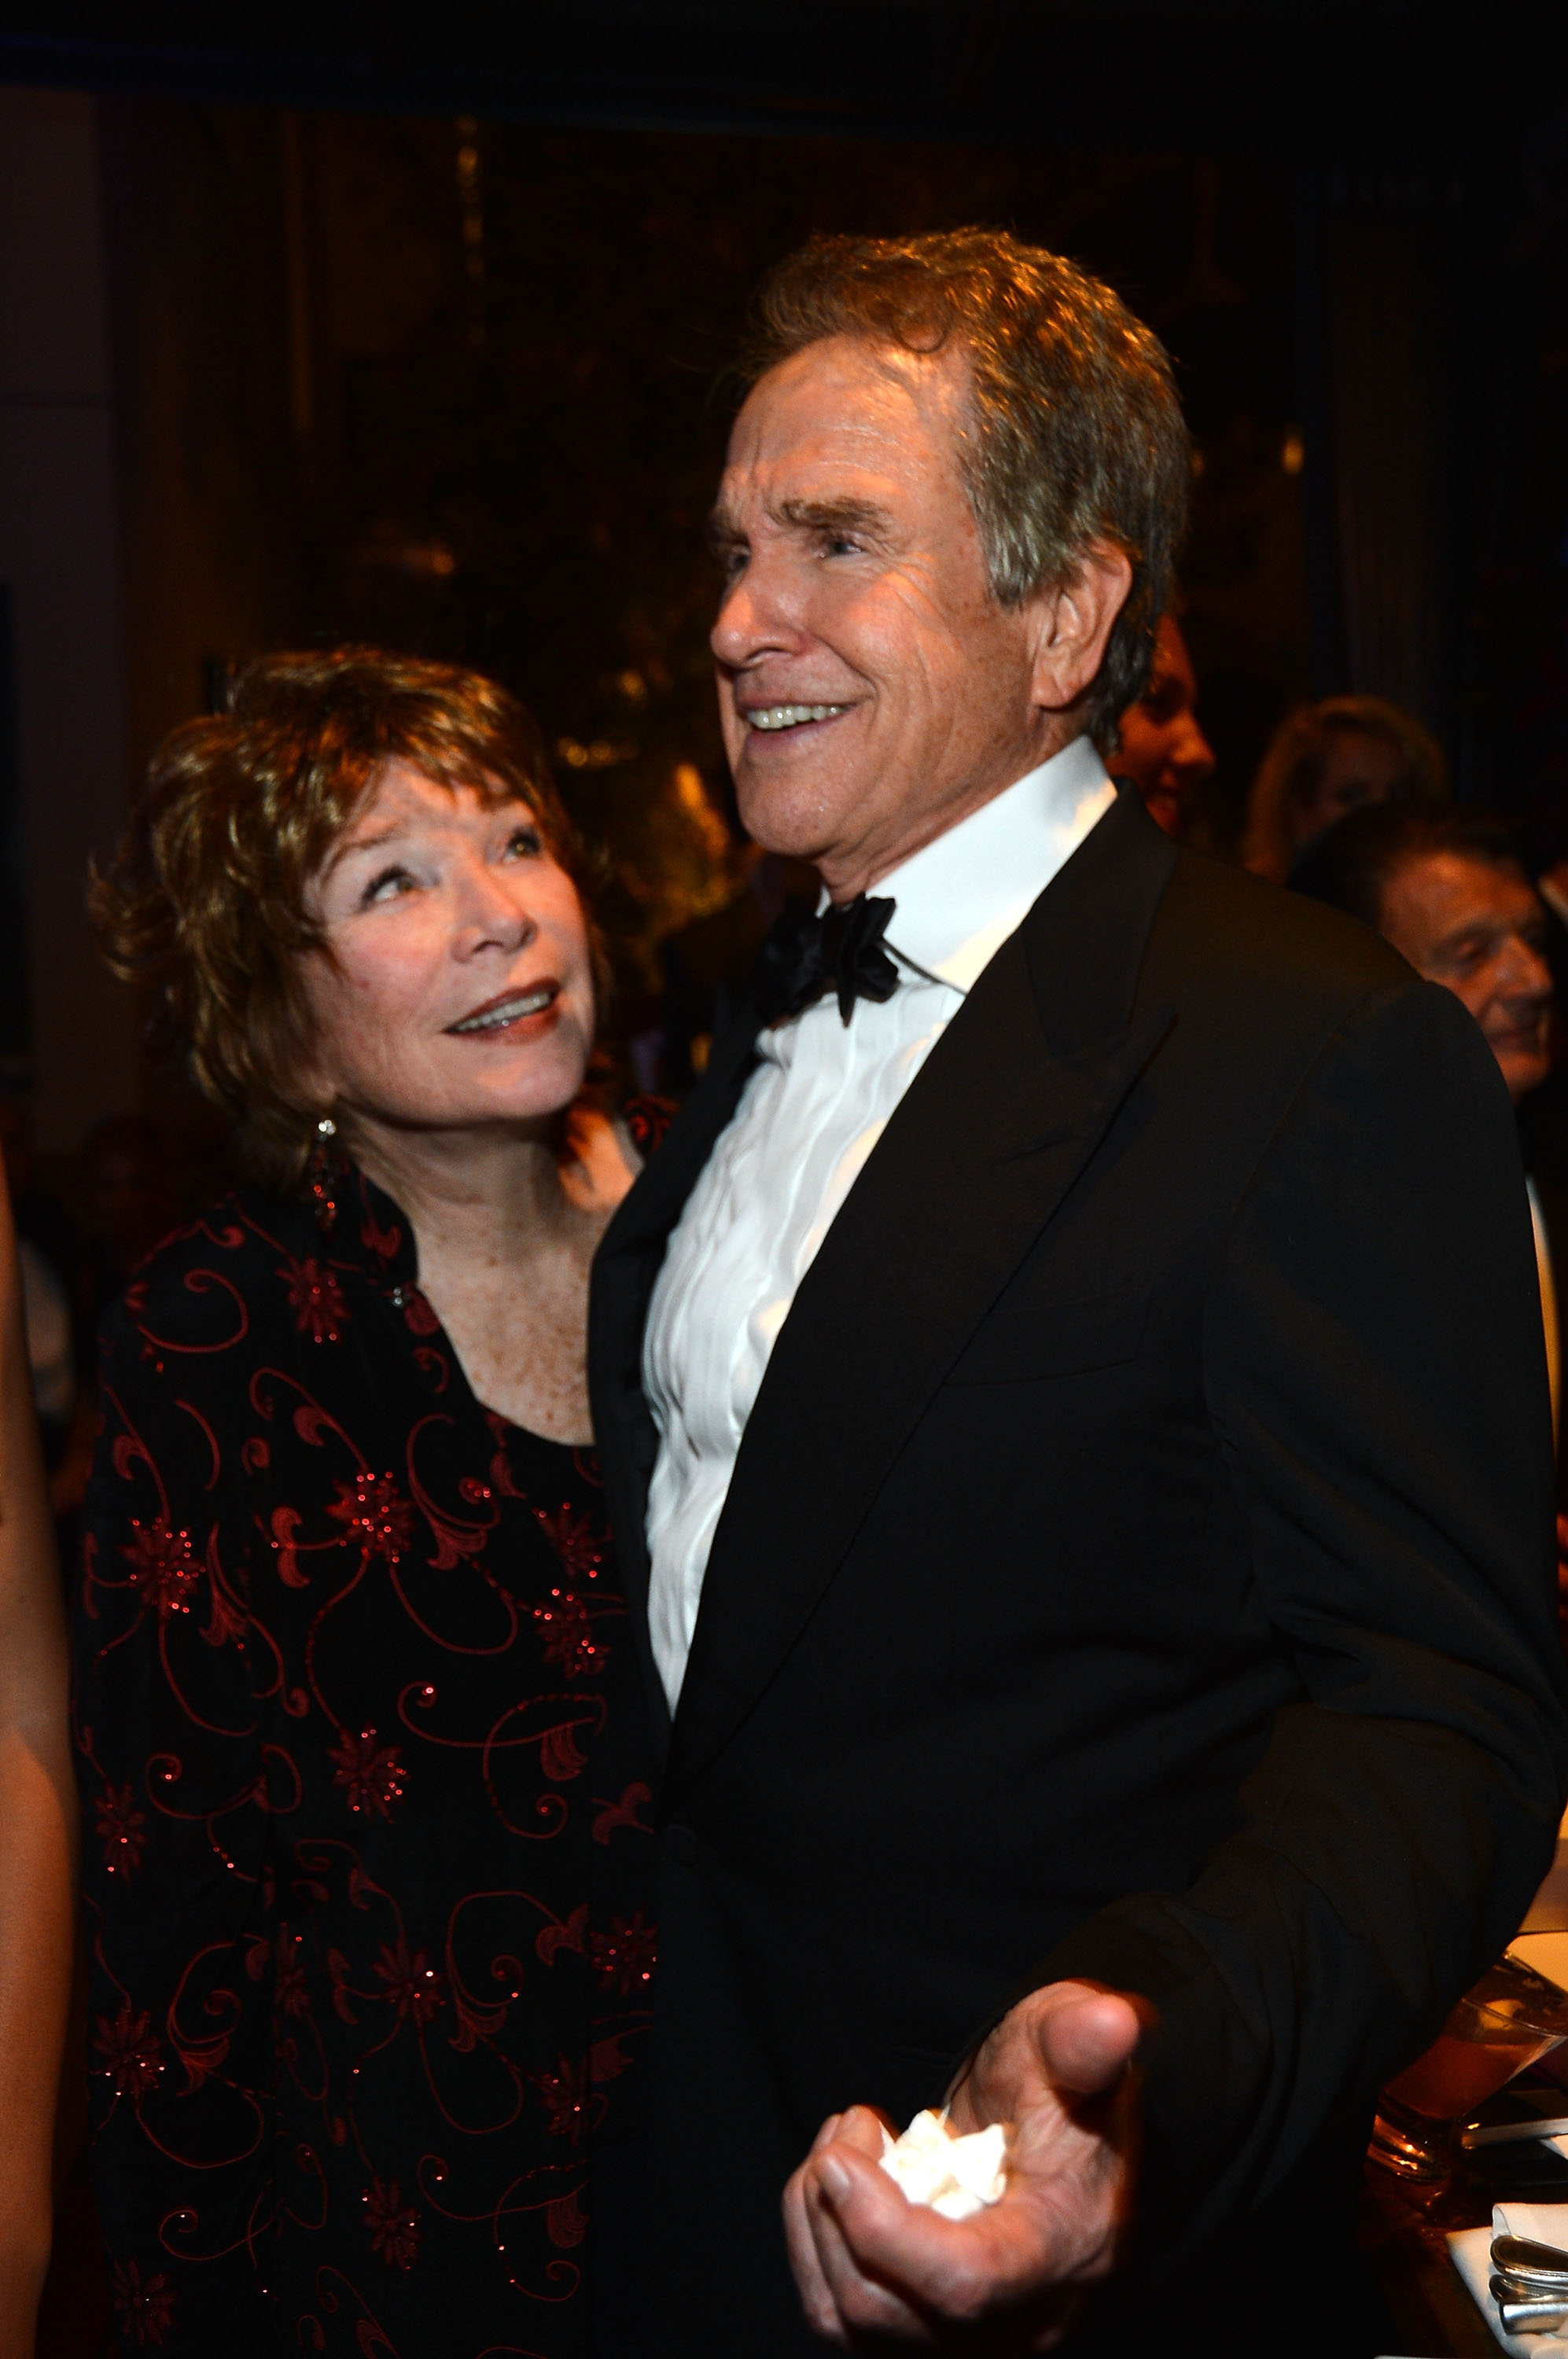 hirley MacLaine y Warren Beatty asisten a la fiesta posterior a la 40ª edición del AFI Life Achievement Award en honor a Shirley MacLaine celebrada en Culver City, California, el 7 de junio de 2012. | Fuente: Getty Images